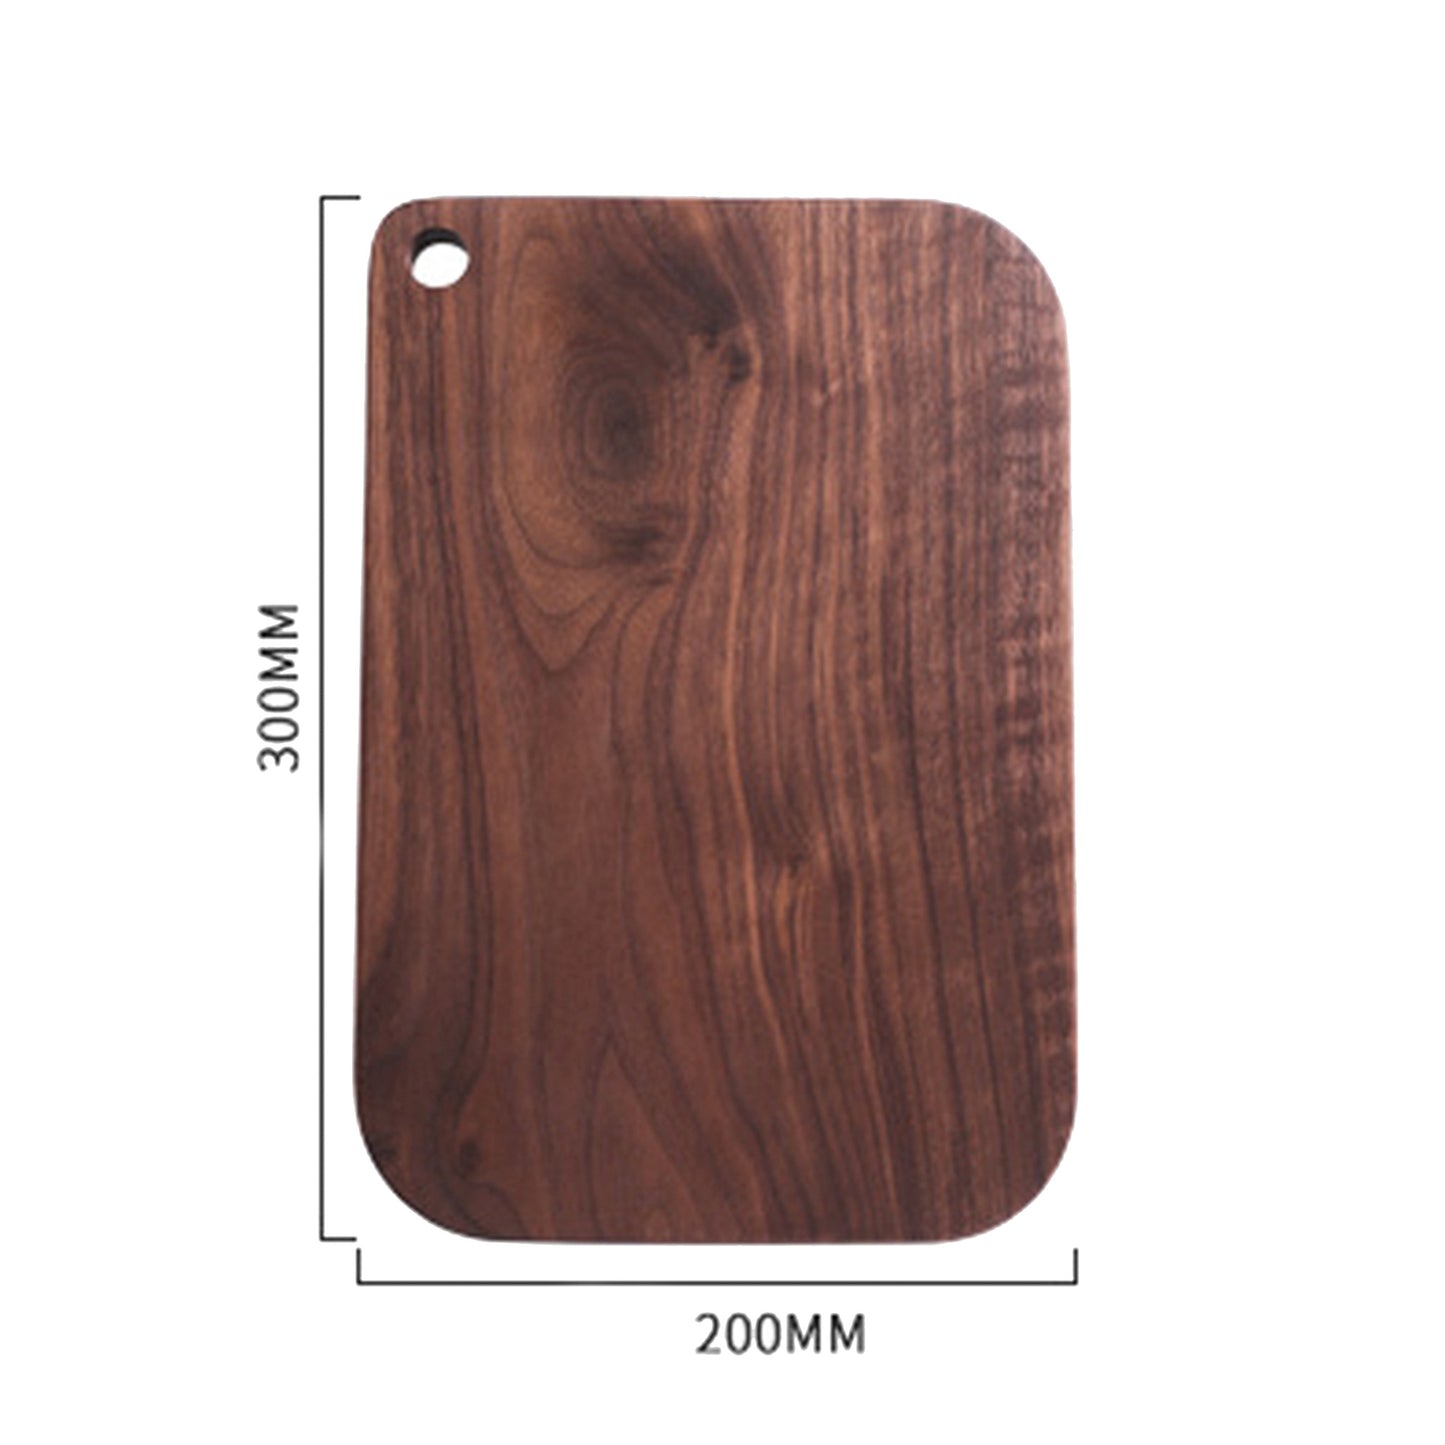 Walnut Wood Cutting Board